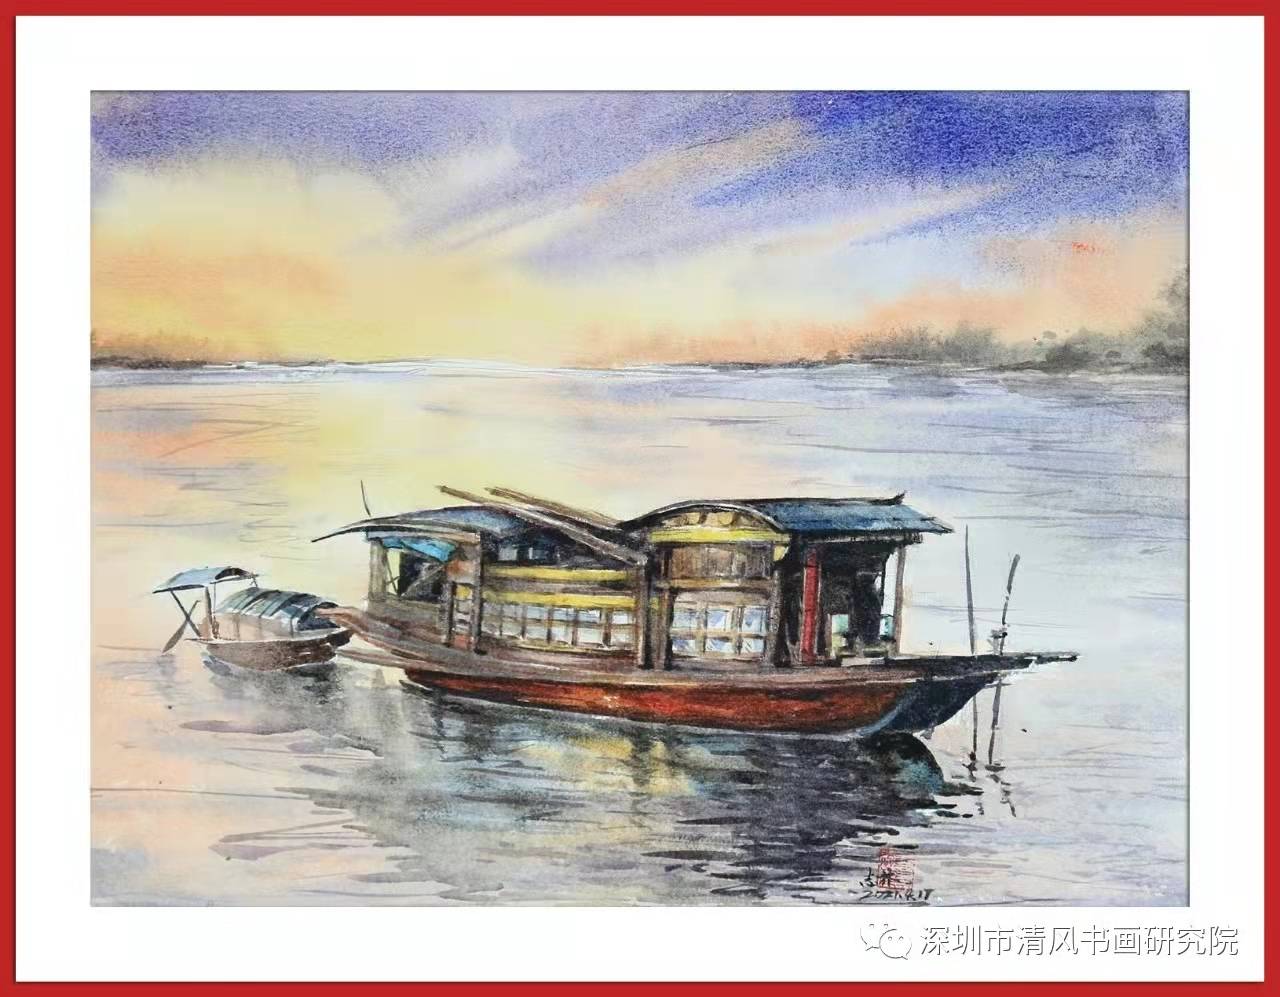 《红船颂》庆祝中国共产党成立一百周年书画巡展深圳福永开展